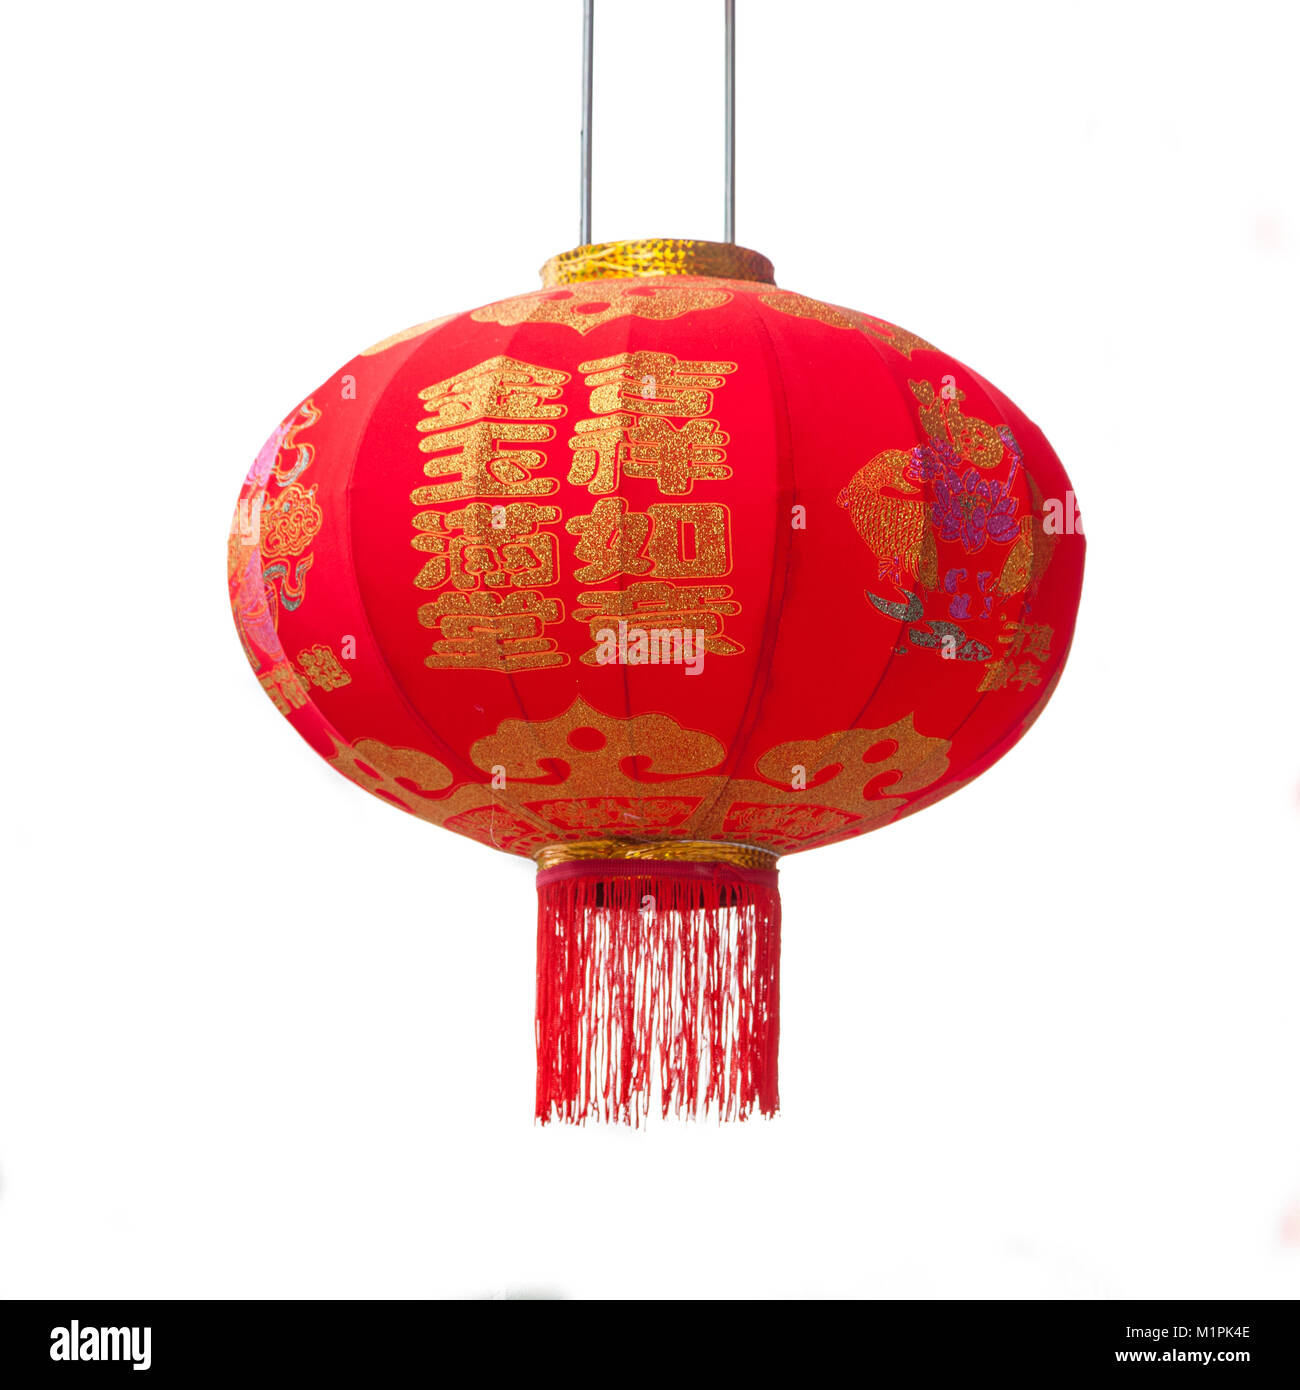 Traditionelle chinesische Festival rote Laterne auf weißem Hintergrund. Der Text auf Laterne bedeutet Glück und Glück, die normalerweise für eine Festival Segnungen verwendet Stockfoto